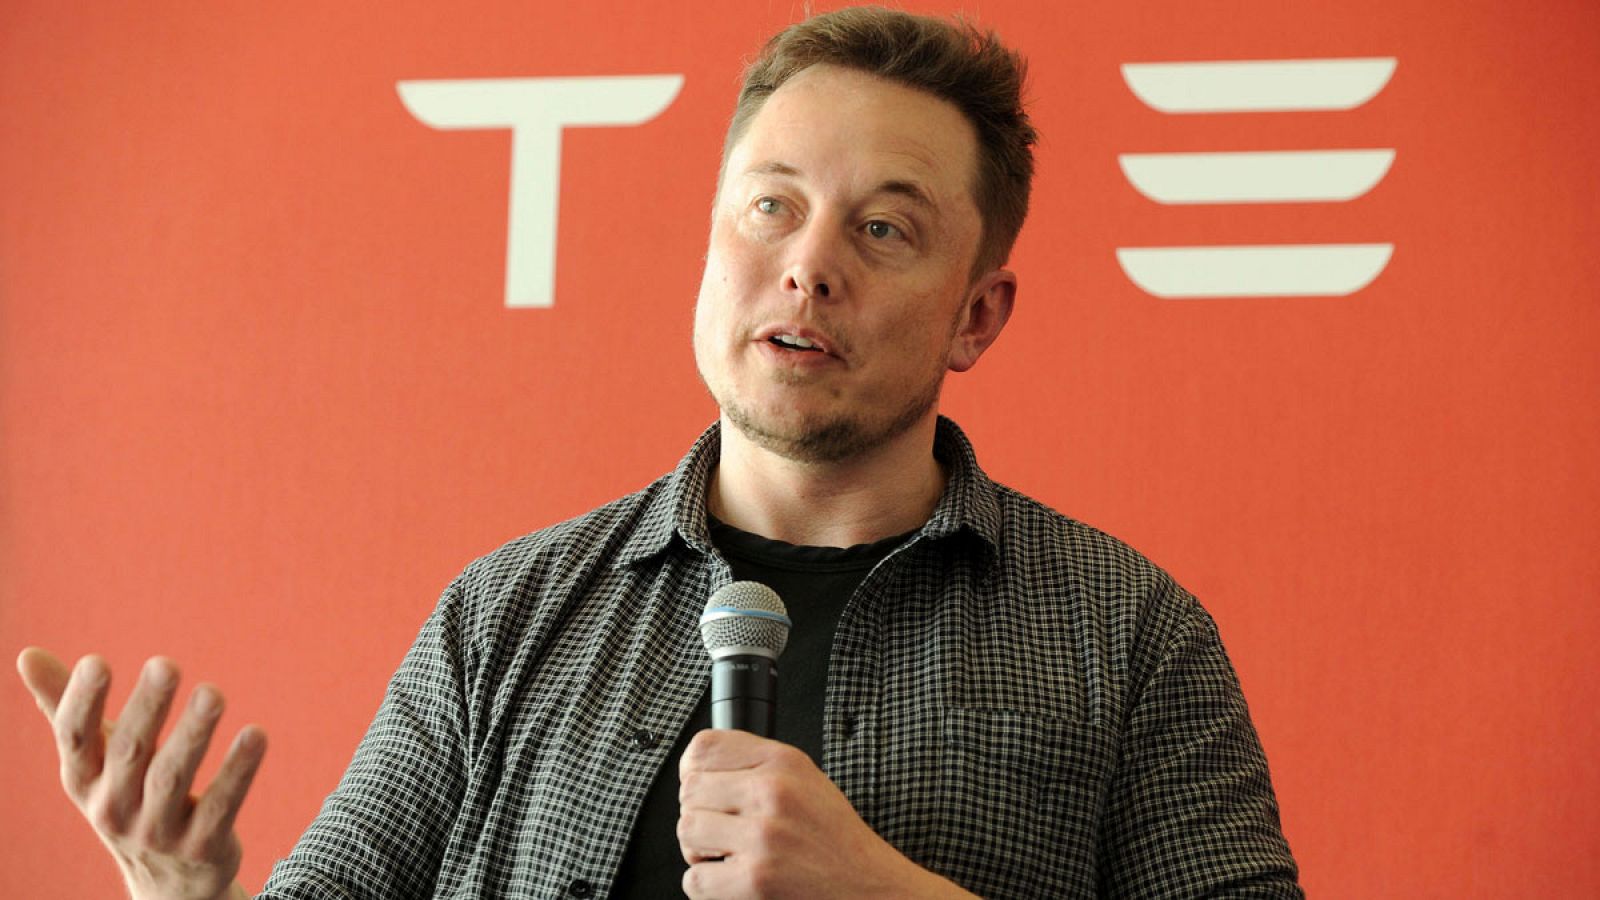 El fundador de la compañía automovilística Tesla, Elon Musk, en una imagen de julio de 2016.